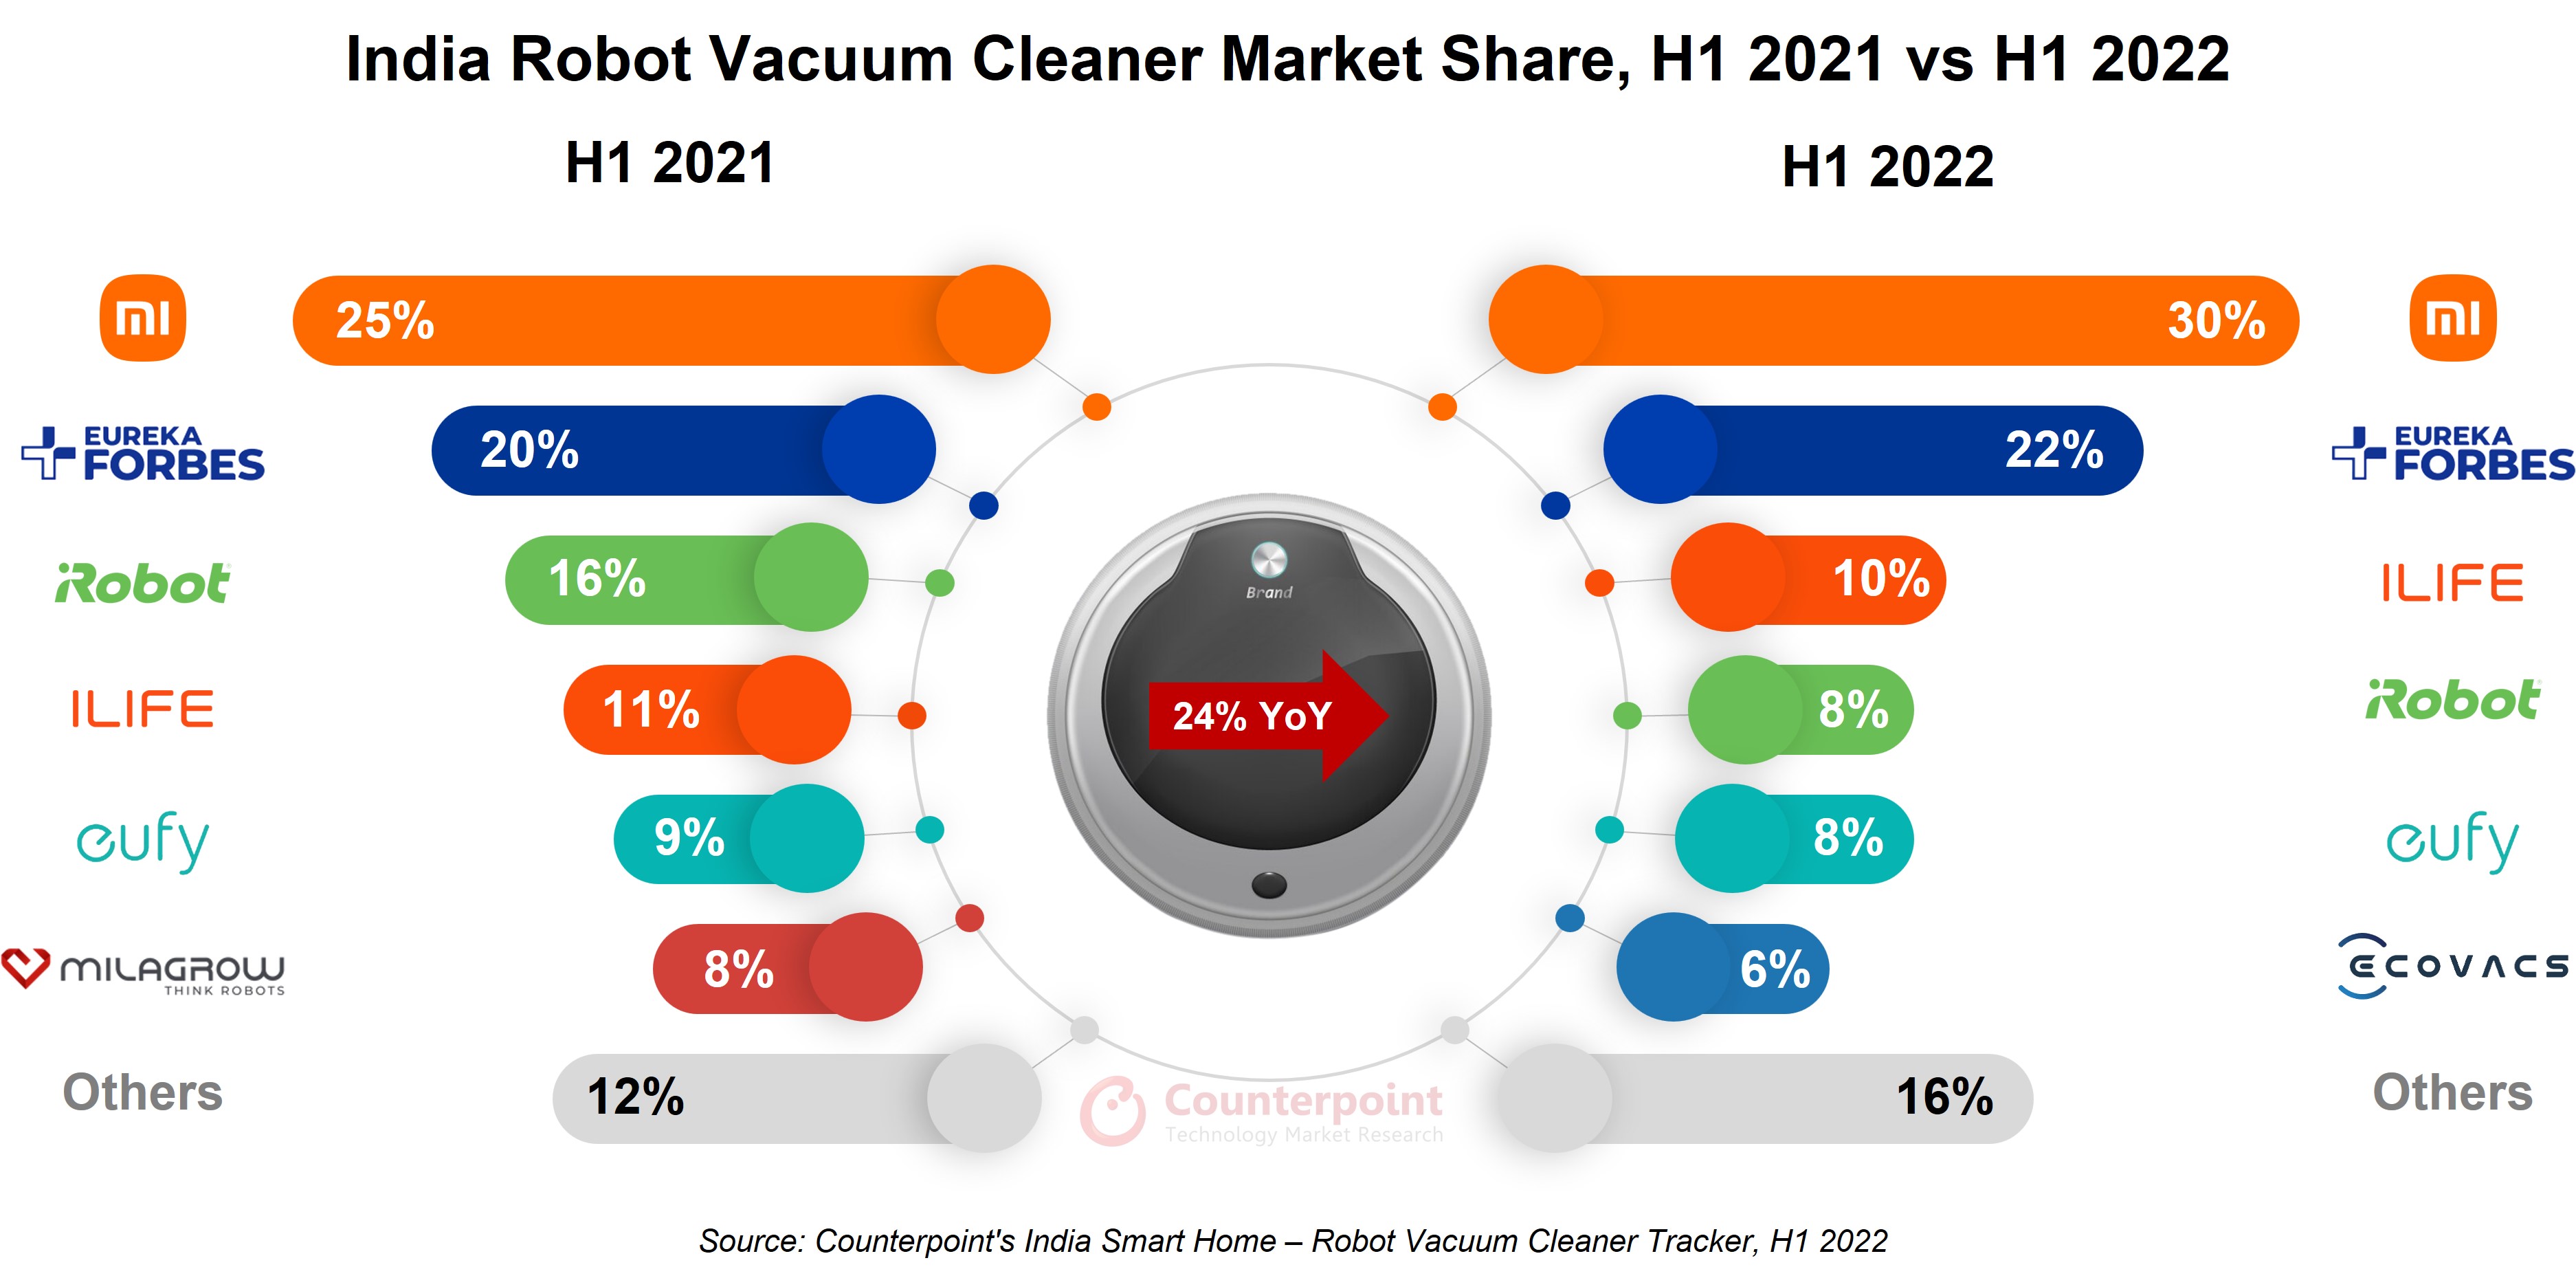 印度机器人吸尘器市场2021年上半年vs 2022年上半年- Counterpoint Research